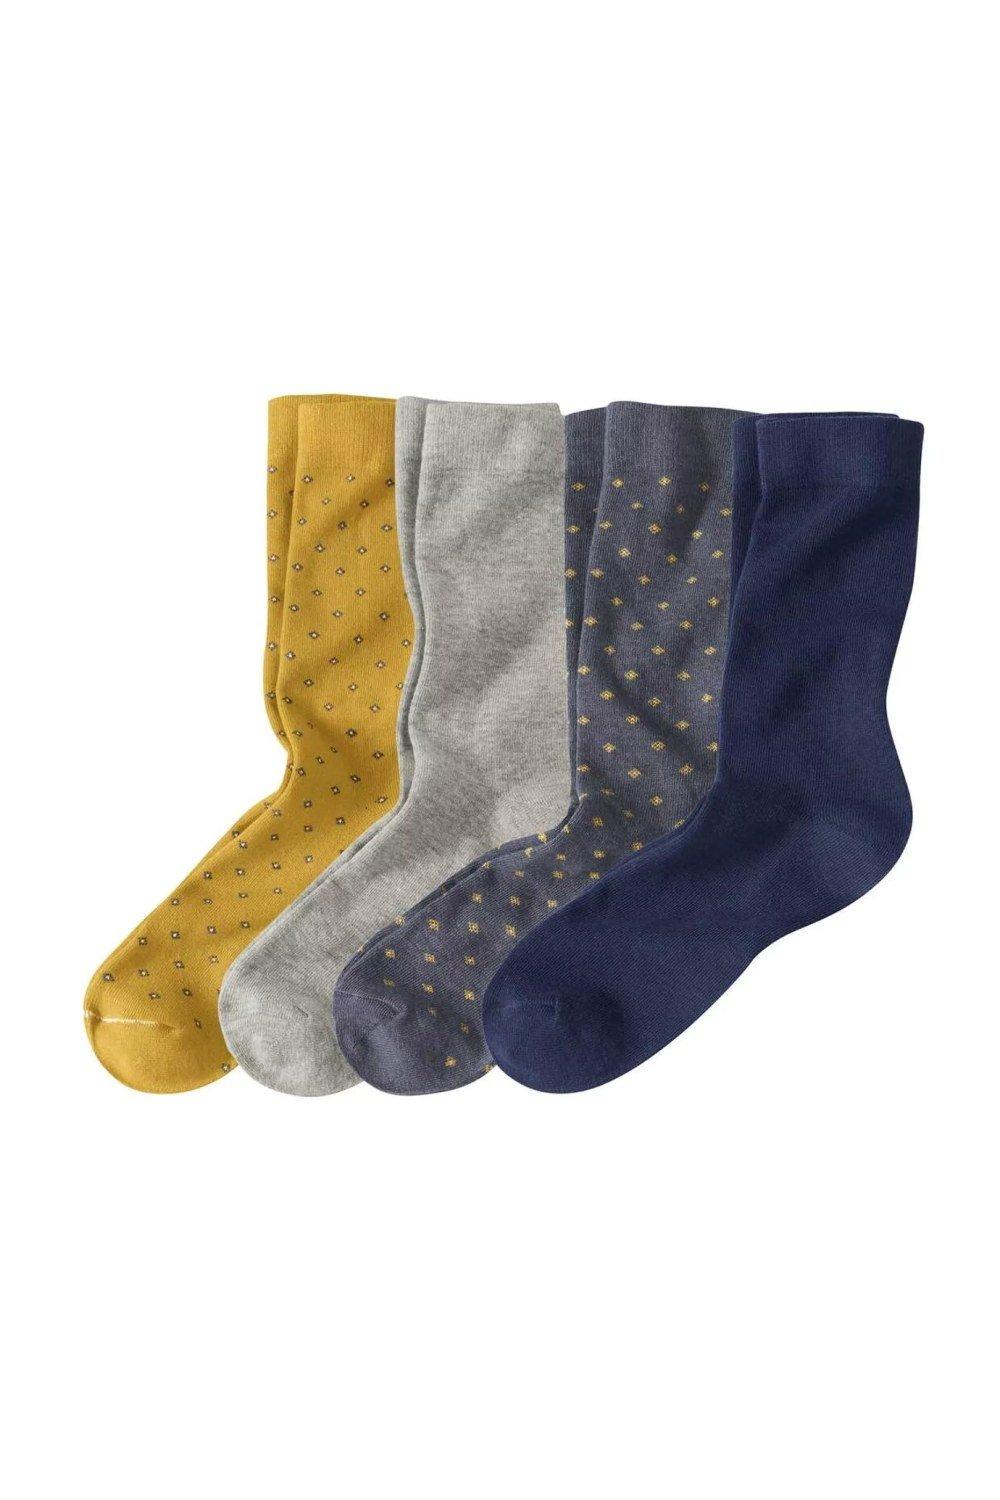 Coloured Socks (Pack of 4)